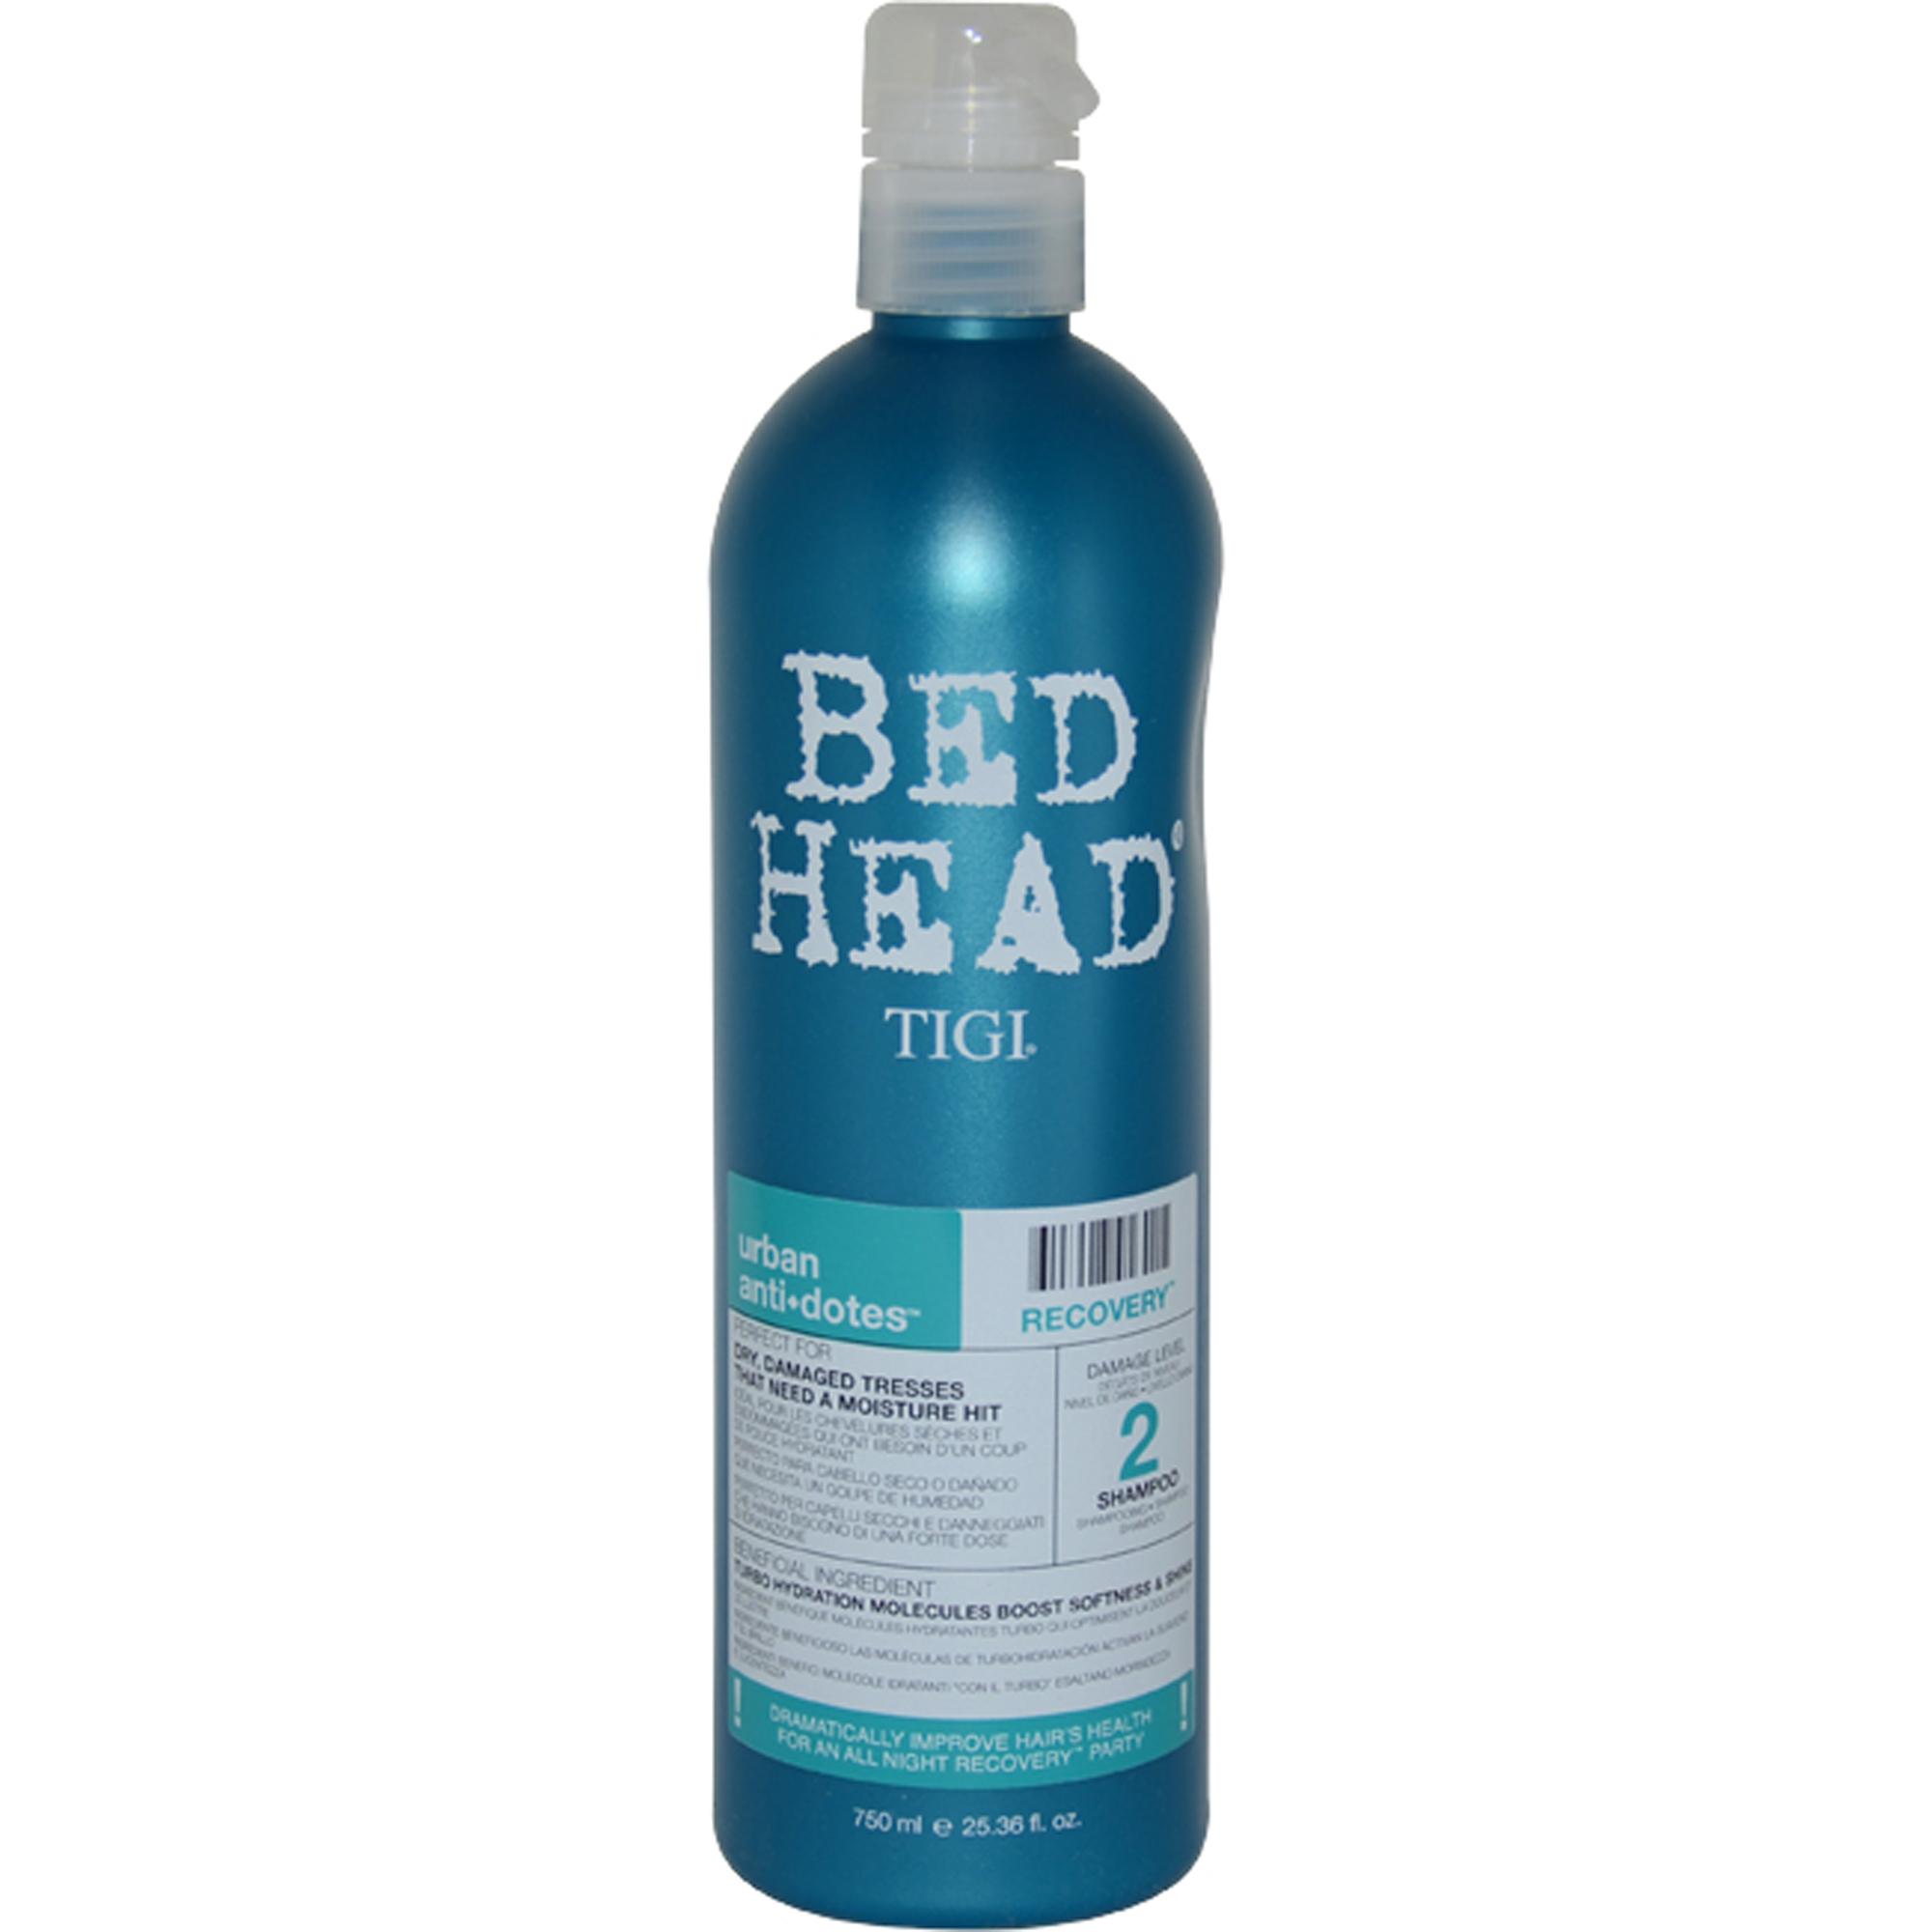 【正規品】【送料無料 】 TIGI Bed Head Urban Antidotes Re-Energize Shampoo ティジー ベッドヘッド アーバン リカバリー シャンプー 750ml 【海外直送】